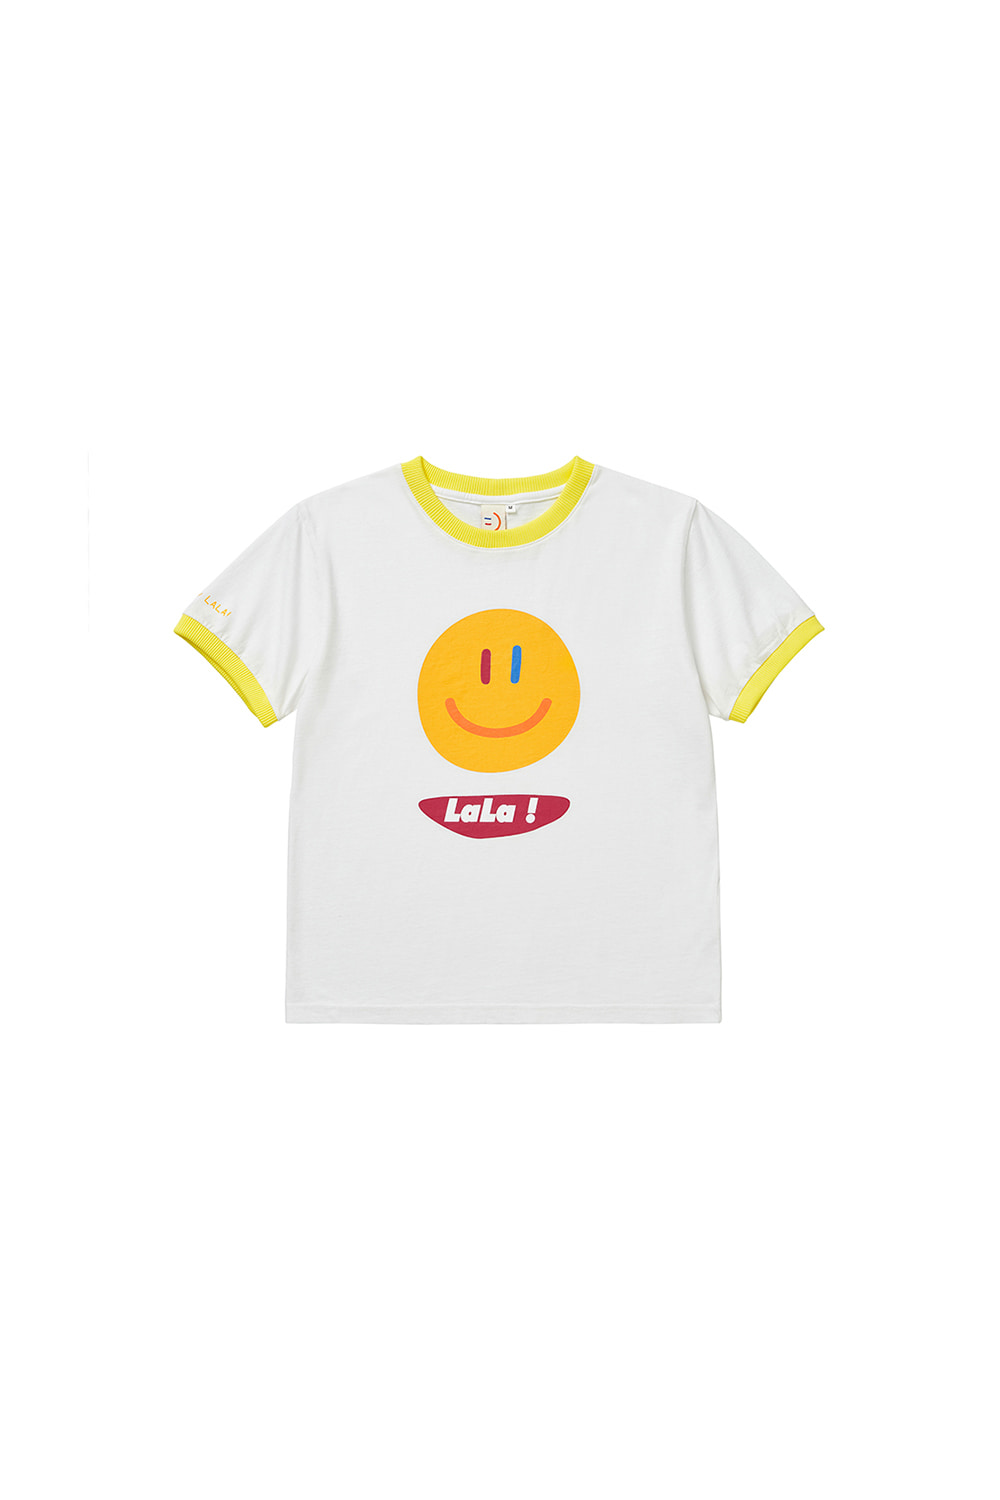 LaLa Kids Twotone T-shirt [Yellow]